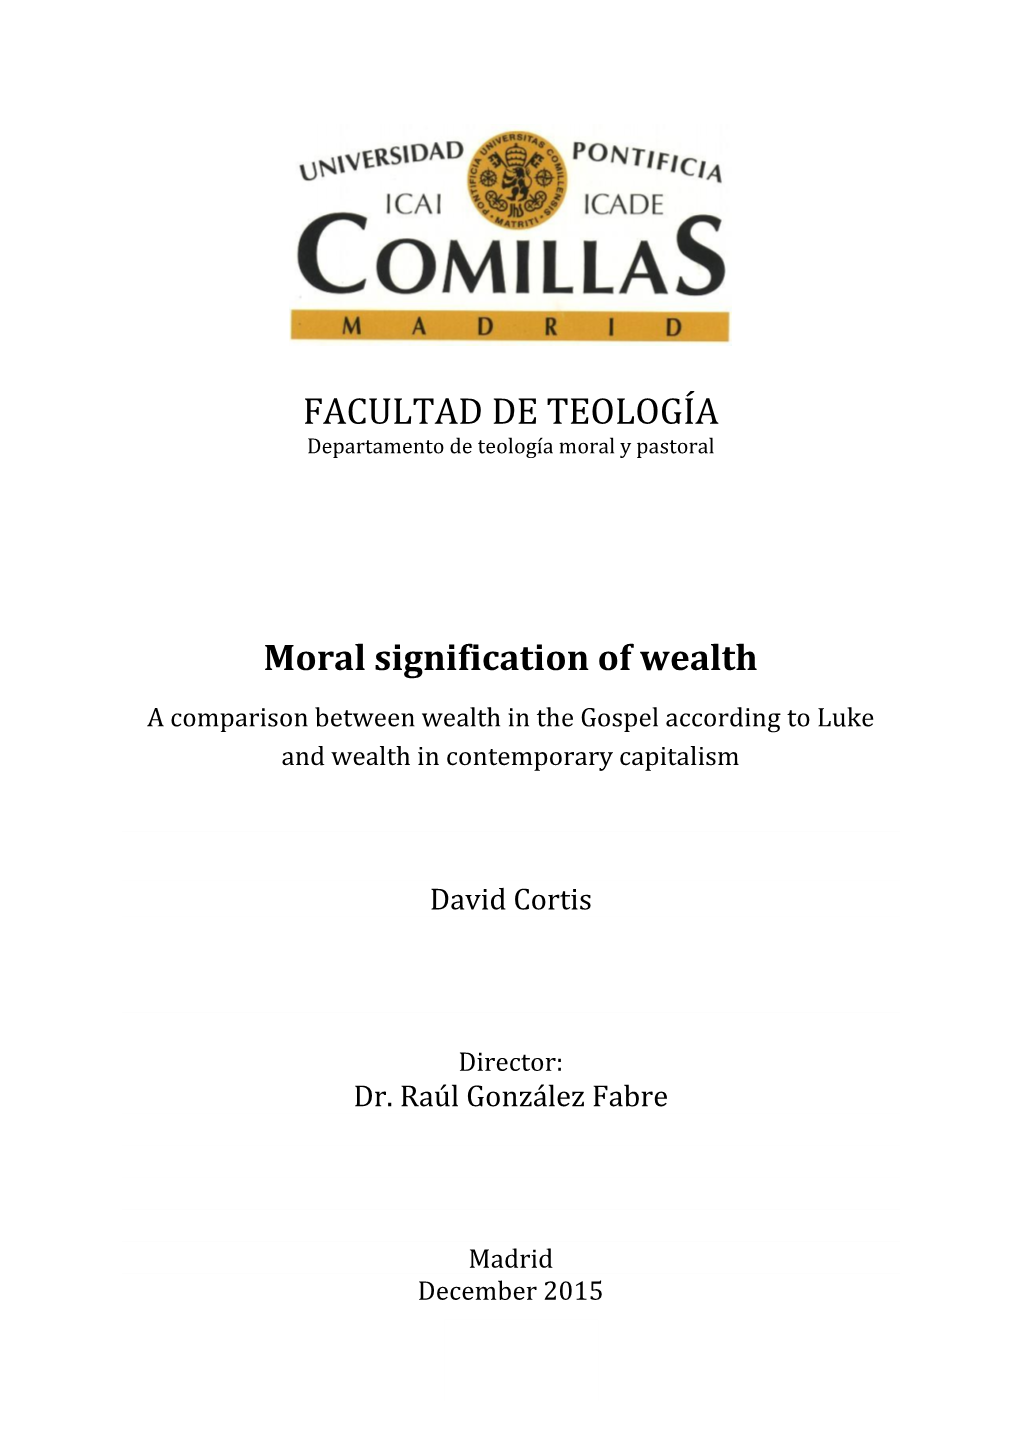 FACULTAD DE TEOLOGÍA Moral Signification of Wealth